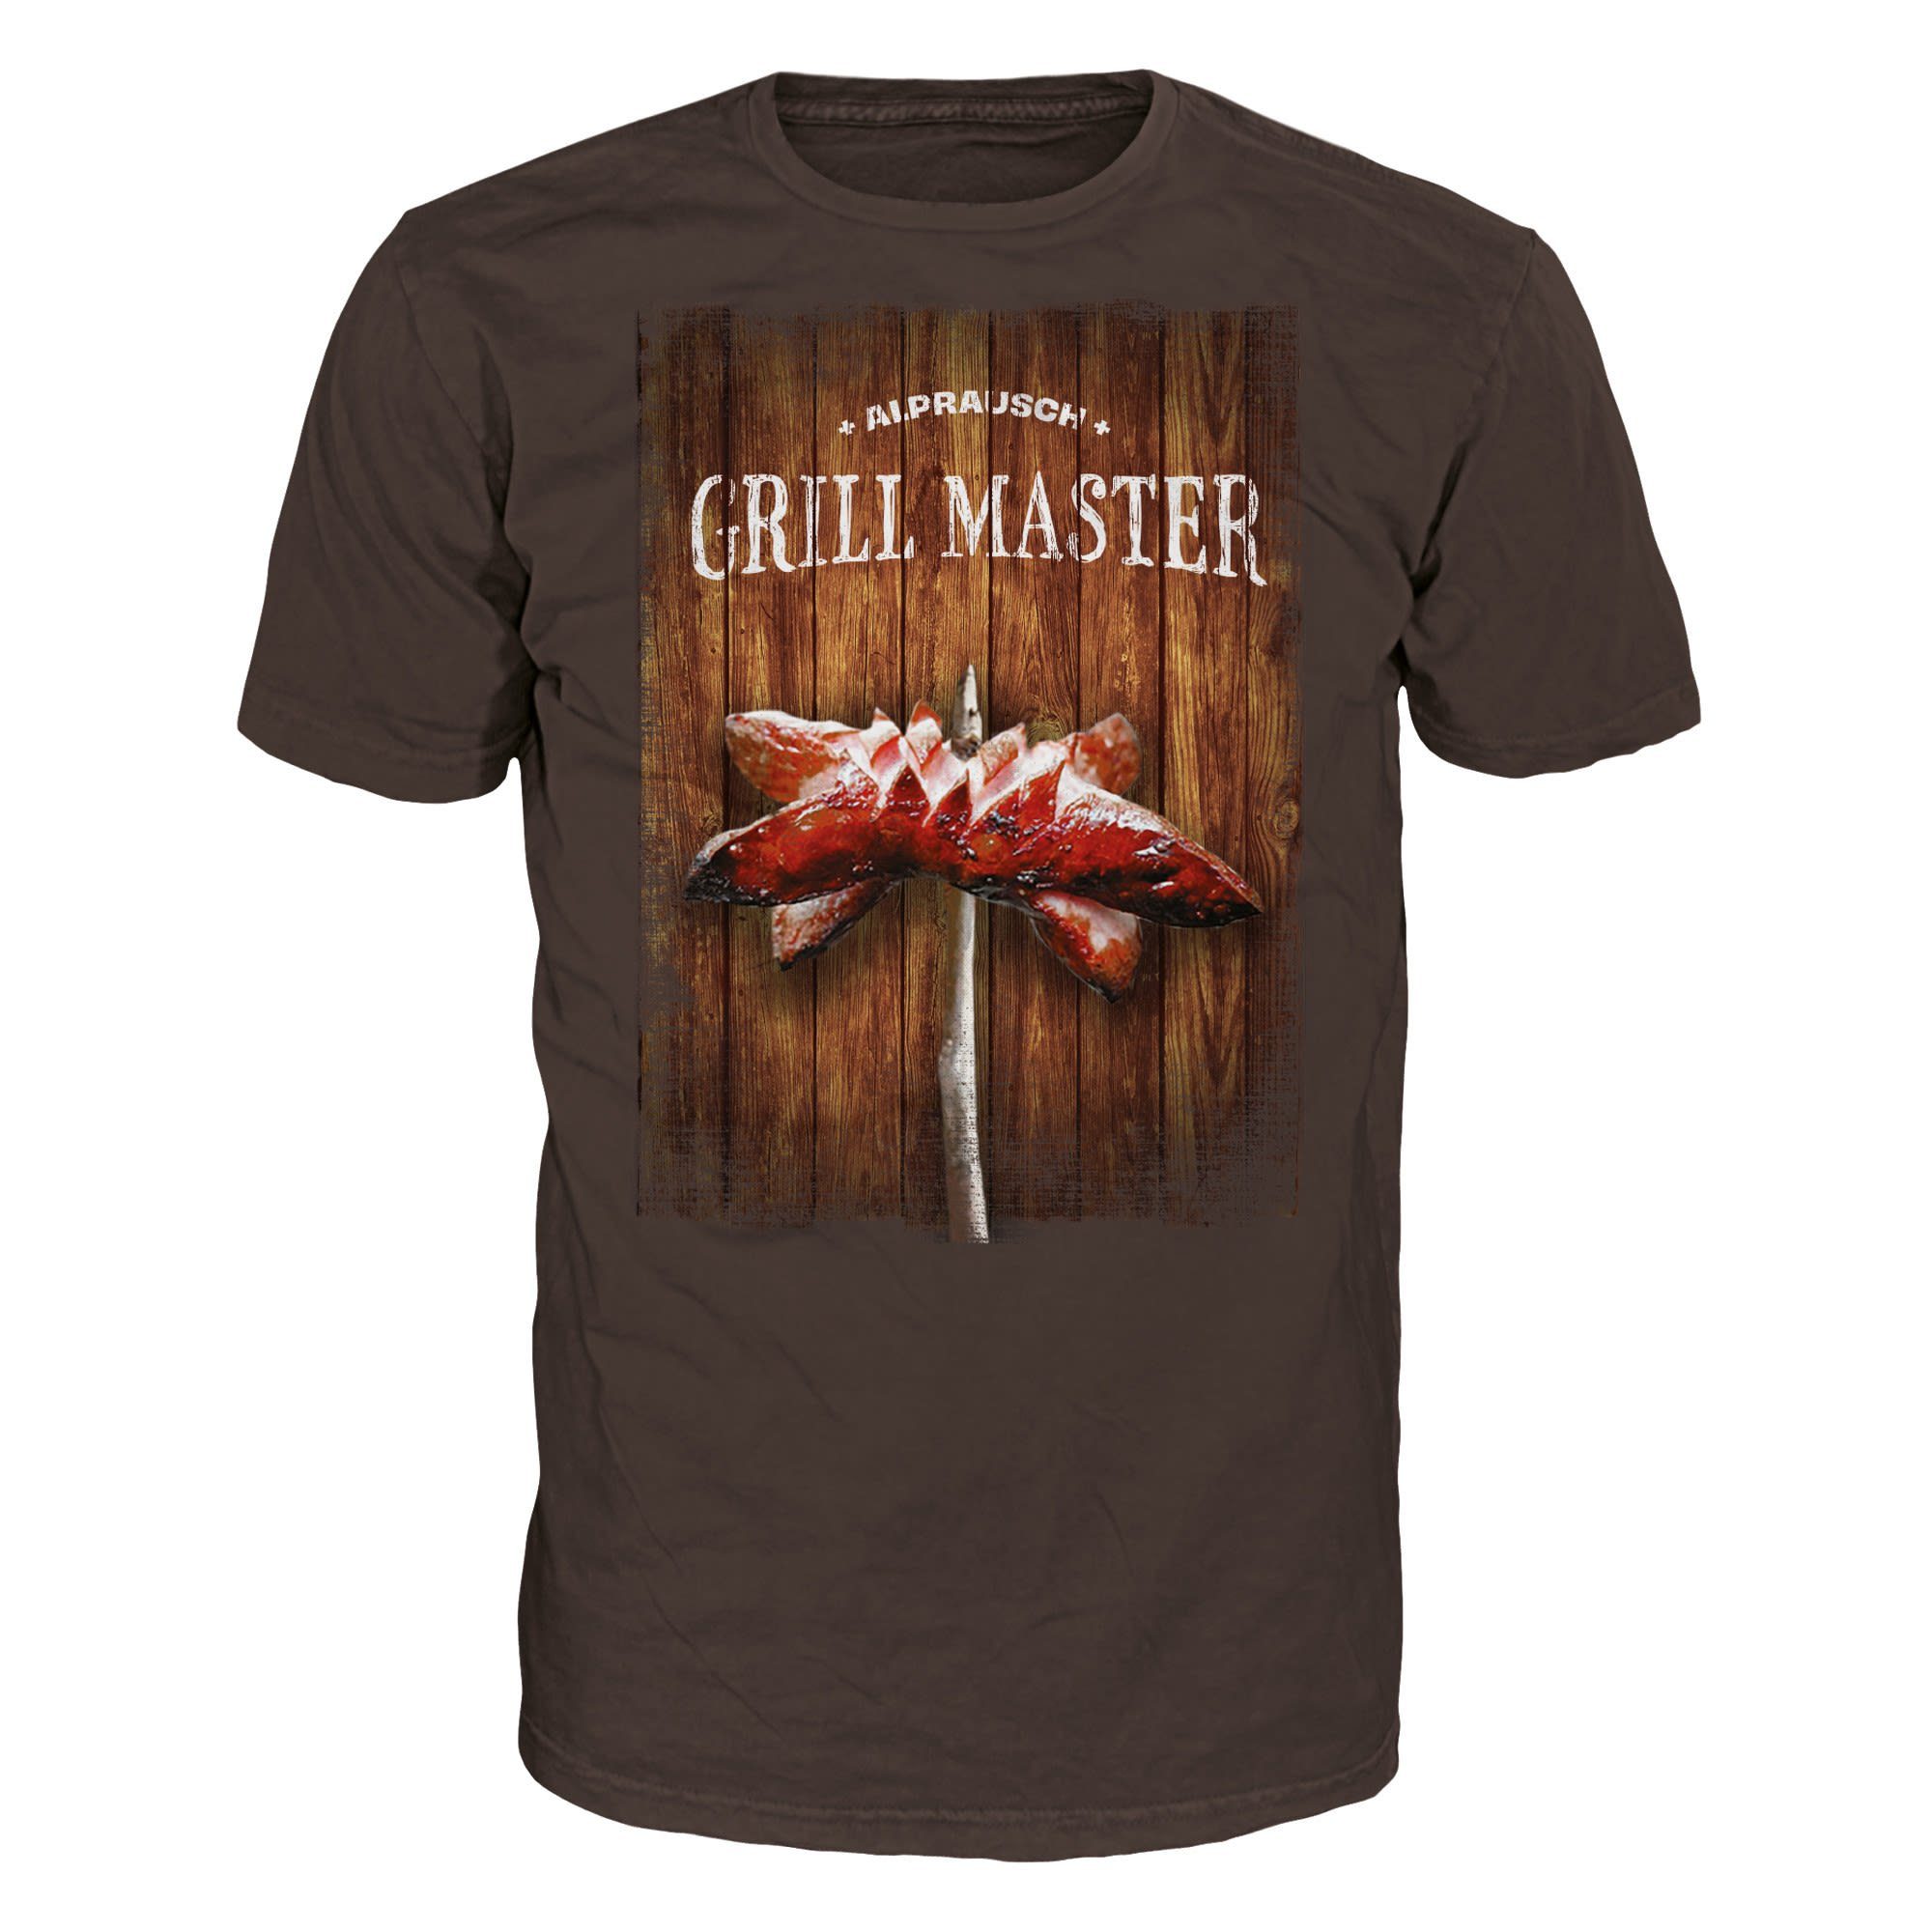 M T-Shirt T-shirt Grillmaster Herren Alprausch Alprausch